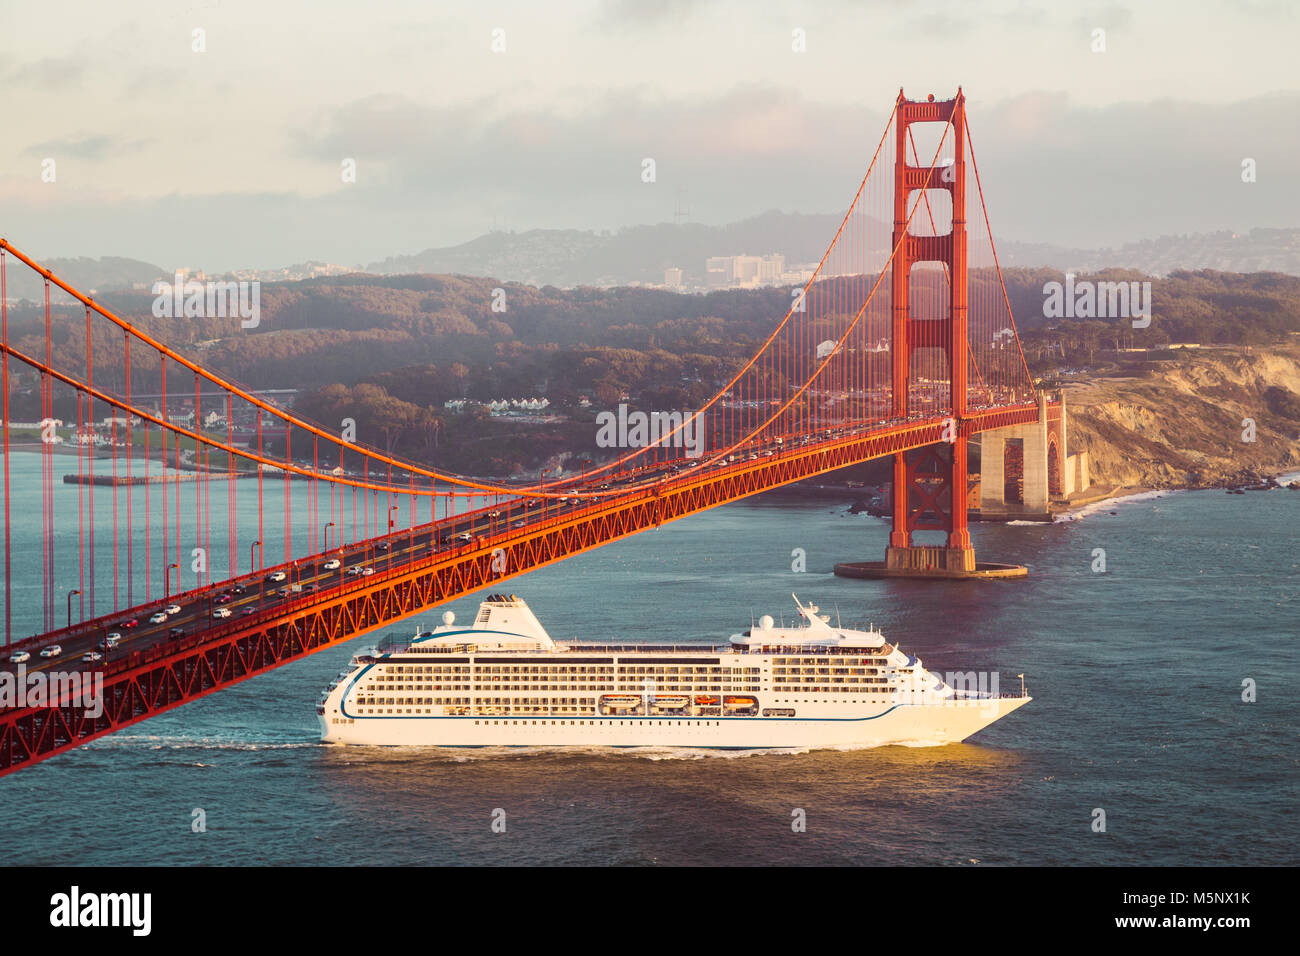 Kreuzfahrtschiff, die berühmte Golden Gate Bridge mit Blick auf die Skyline von San Francisco im Hintergrund im goldenen Abendlicht bei Sonnenuntergang, Kalifornien, USA Stockfoto